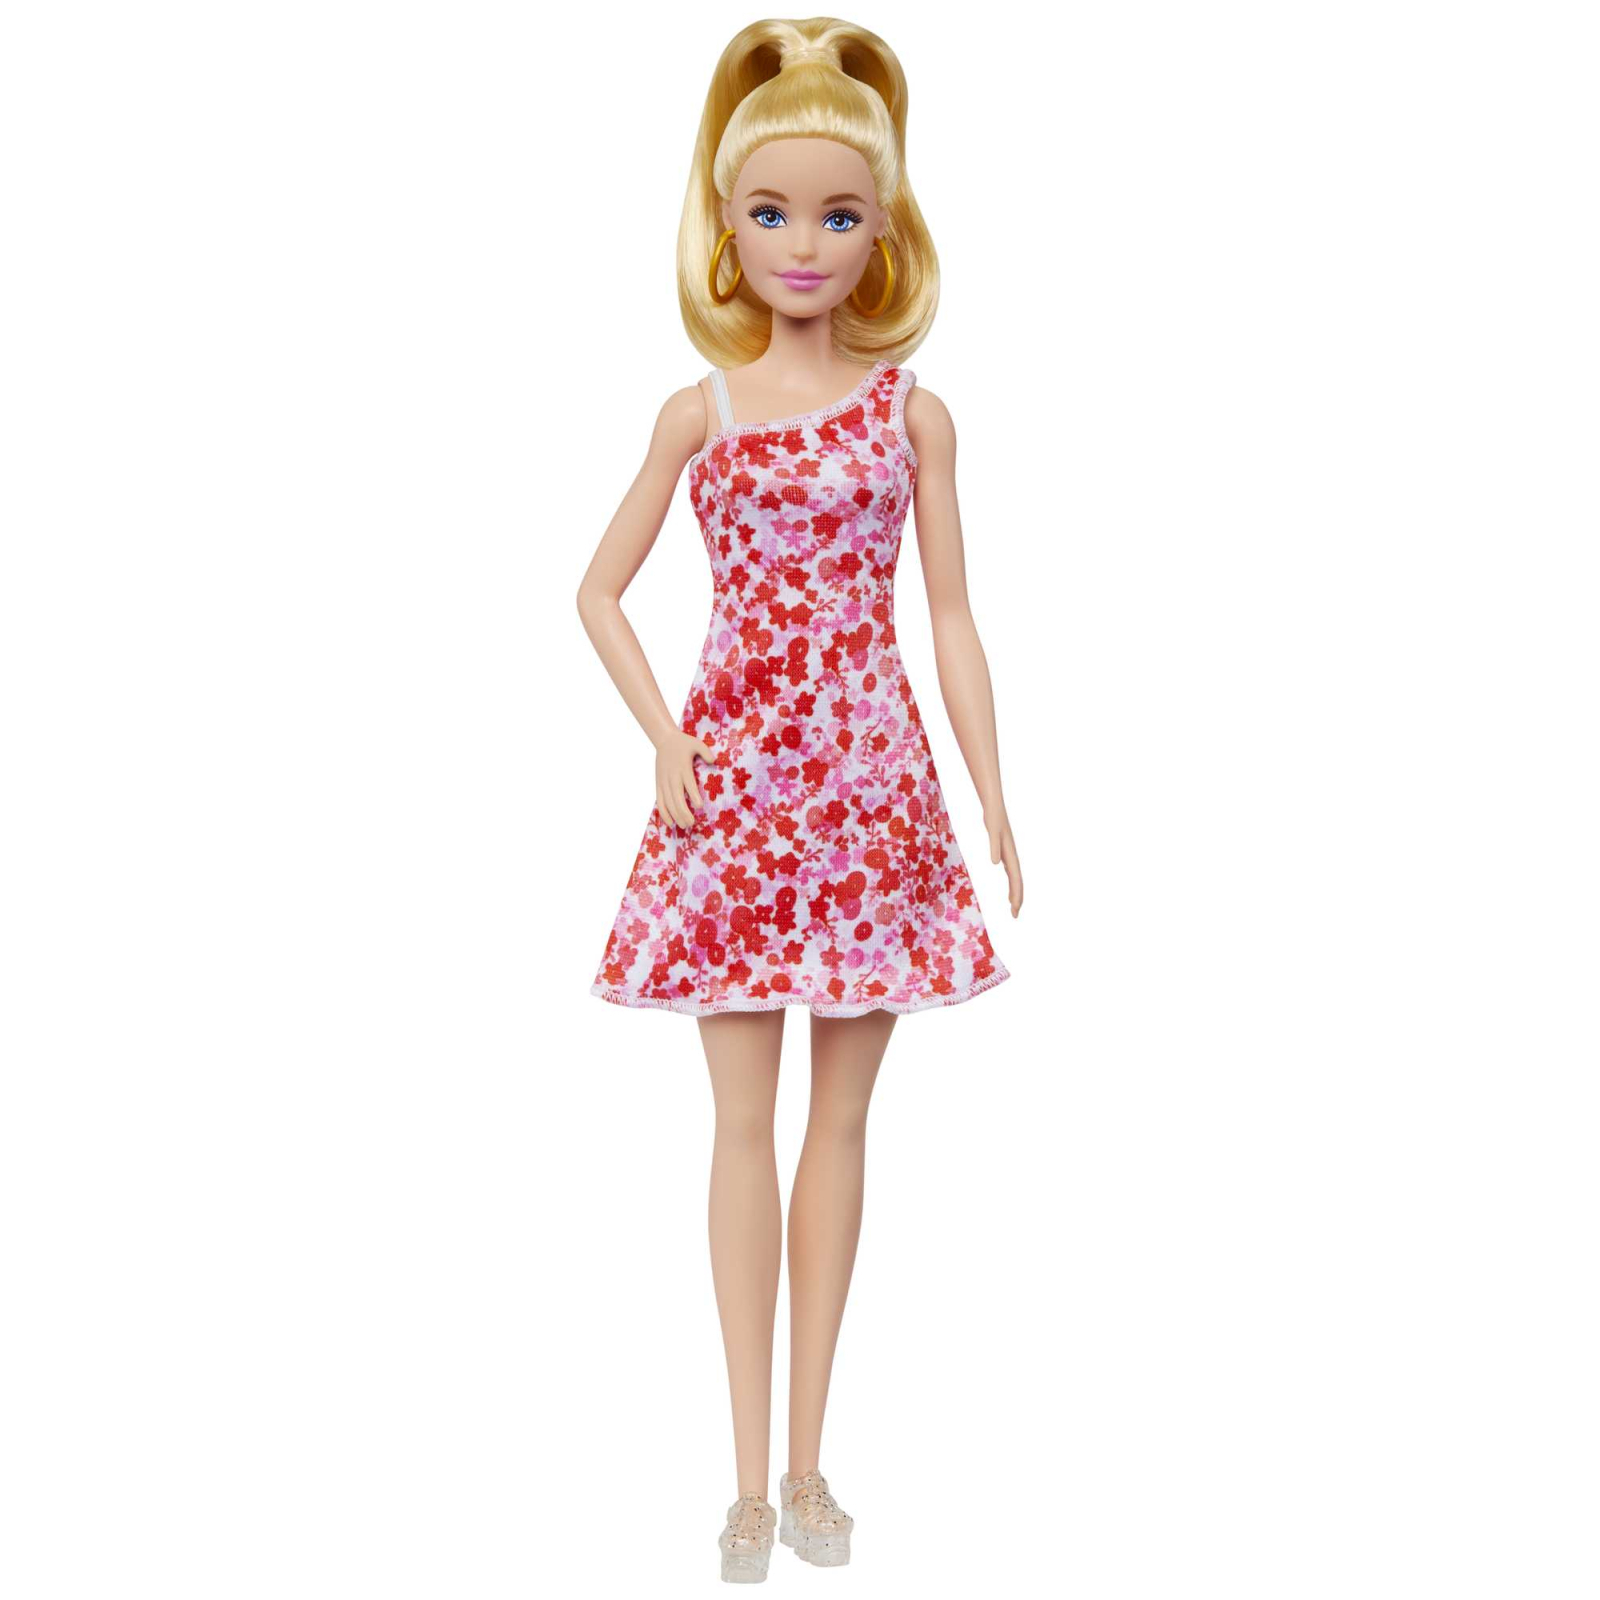 Лялька Barbie Fashionistas у сарафані в квітковий принт (HJT02)